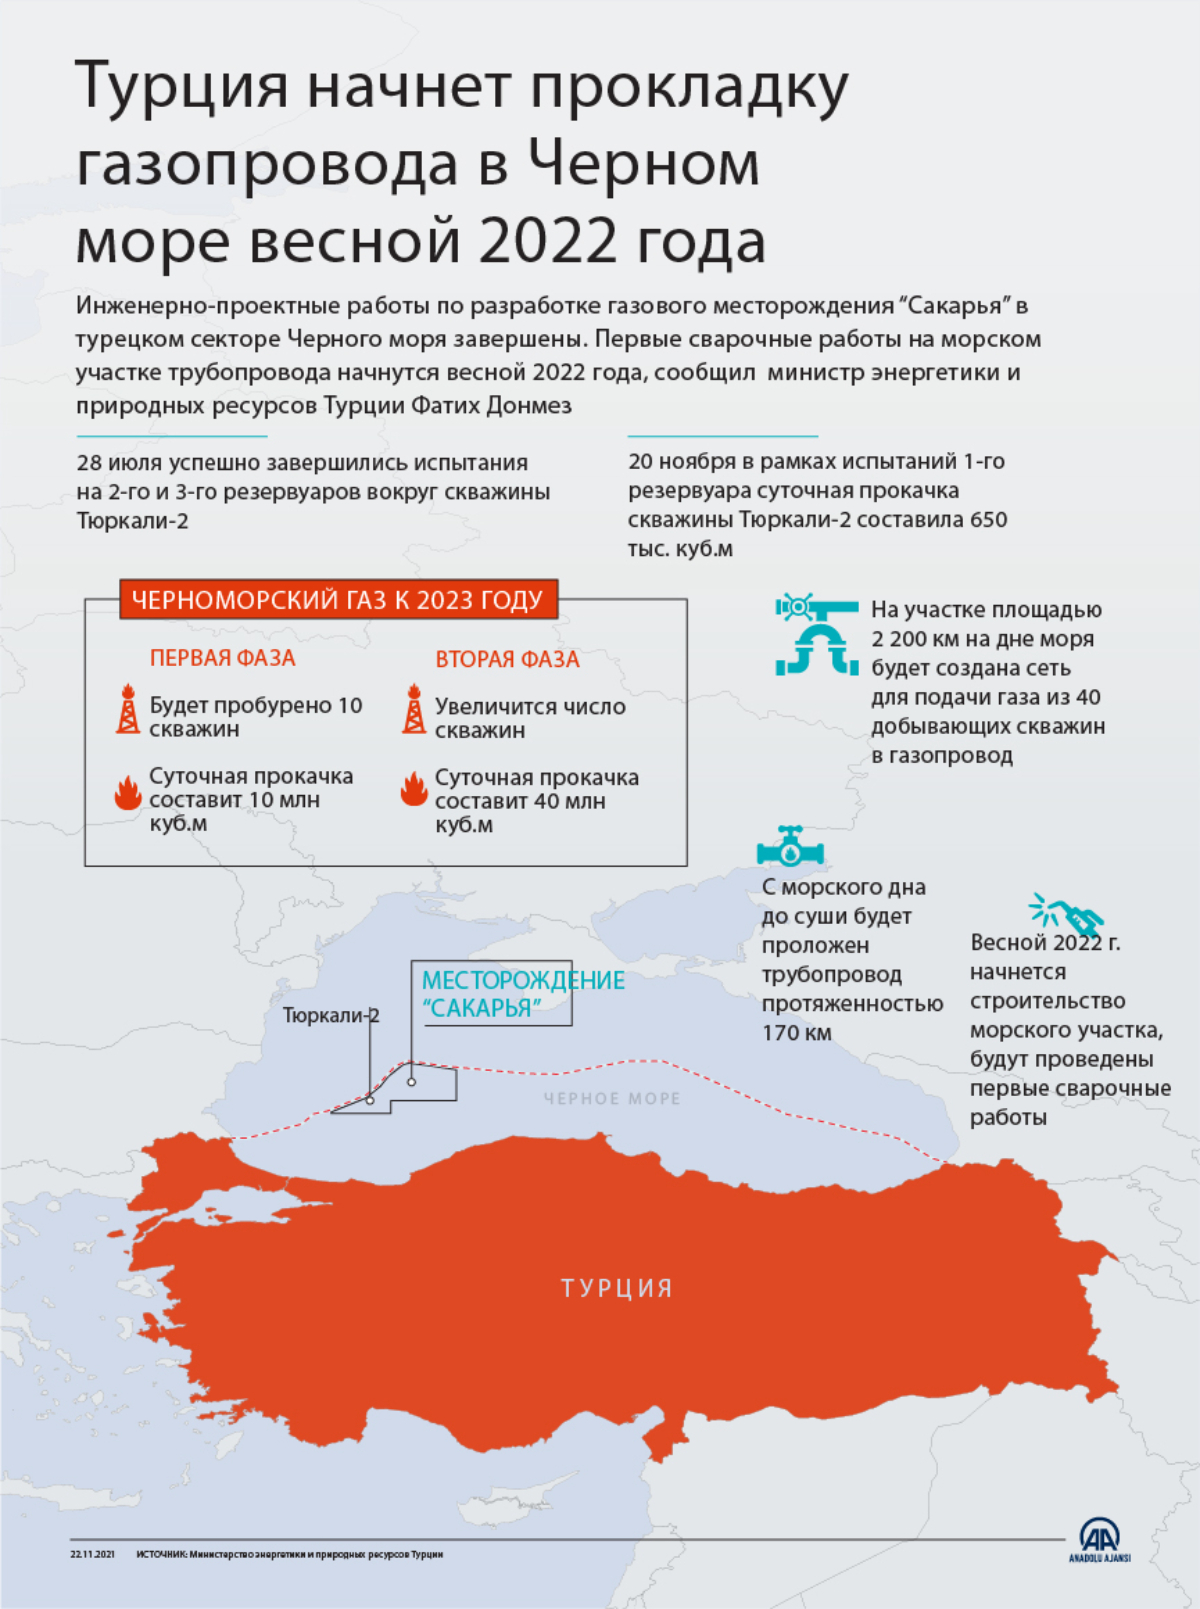 Турция начнет прокладку газопровода в Черном море весной 2022 года